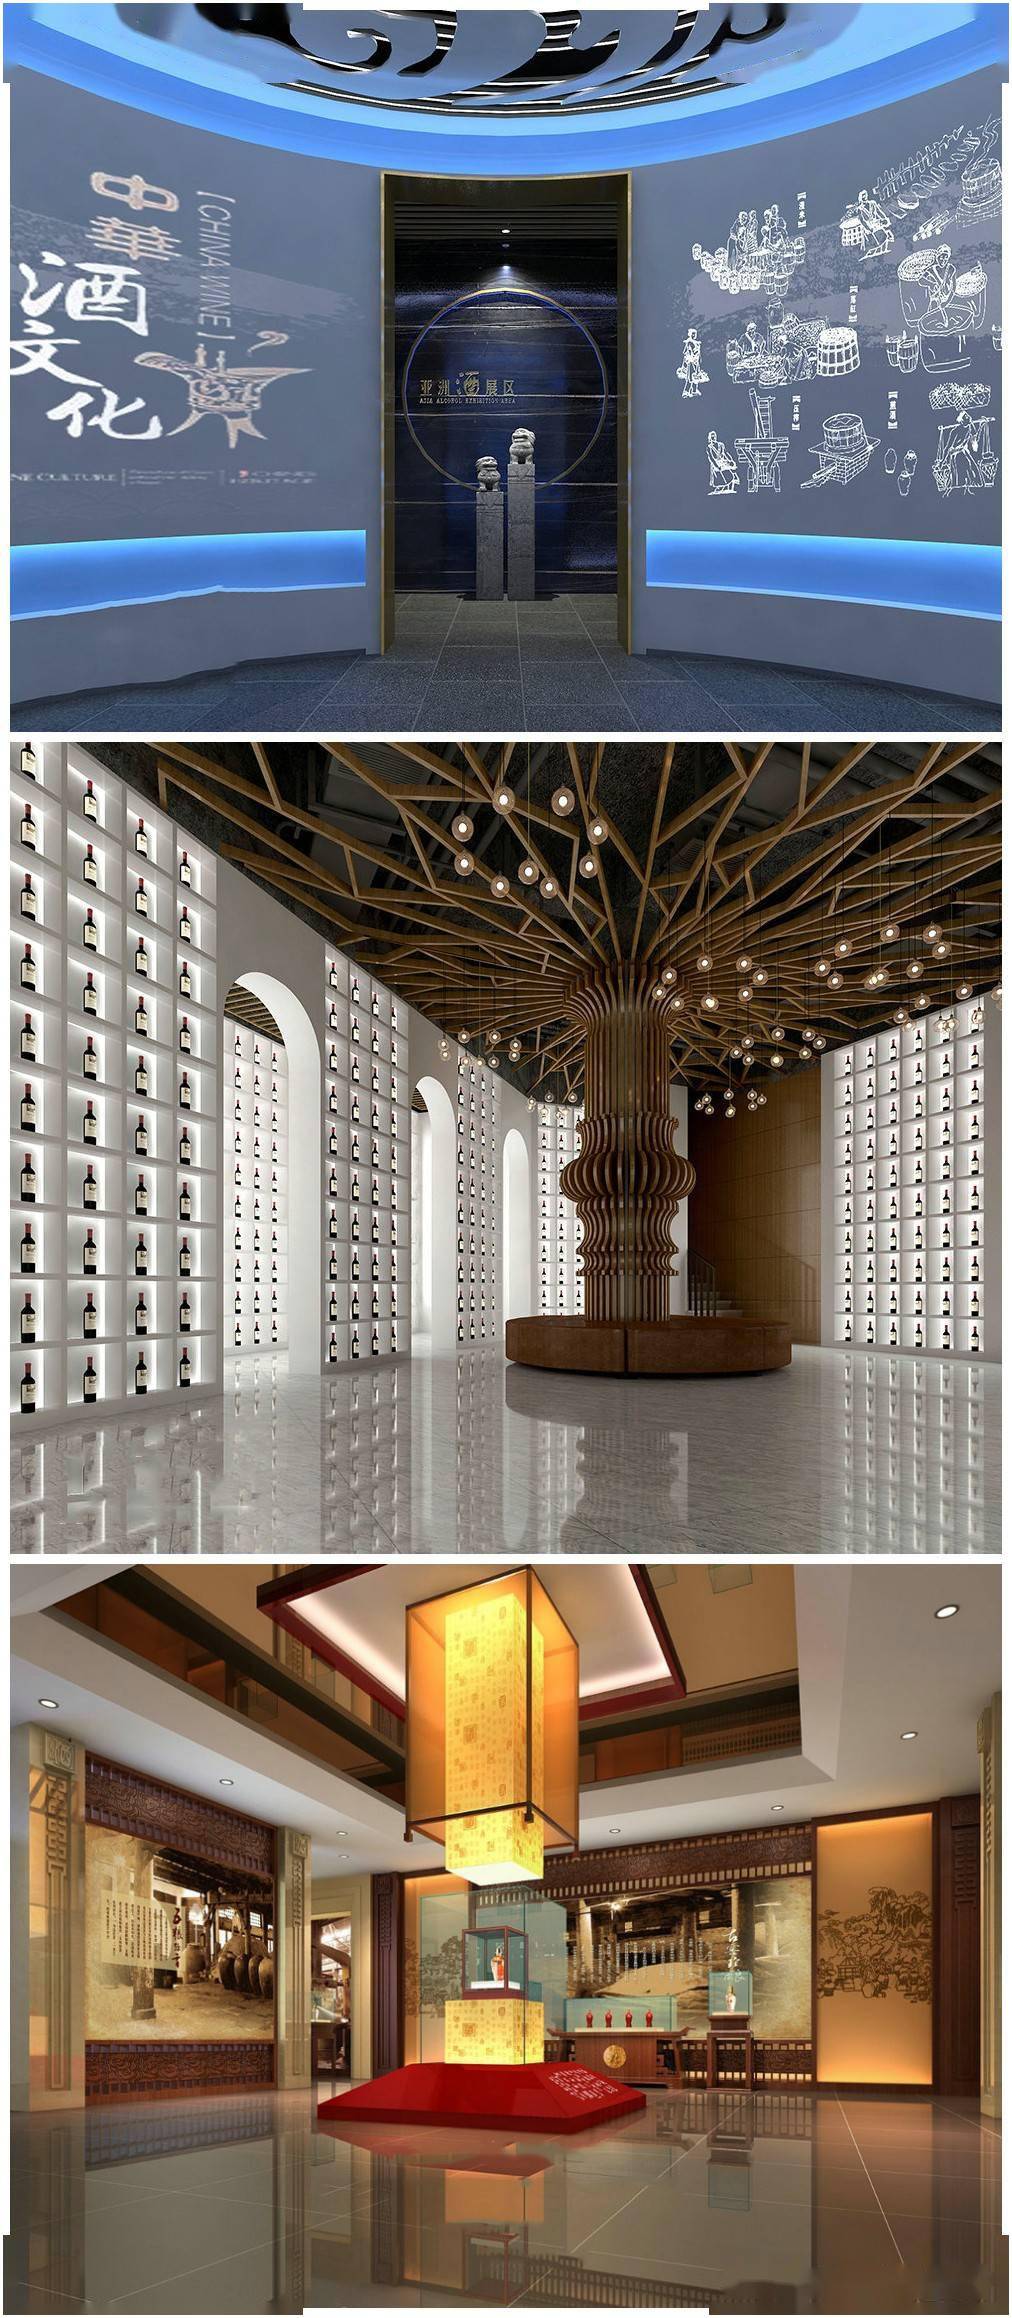 酒文化白酒博物馆白酒展厅室内设计效果图实景图片